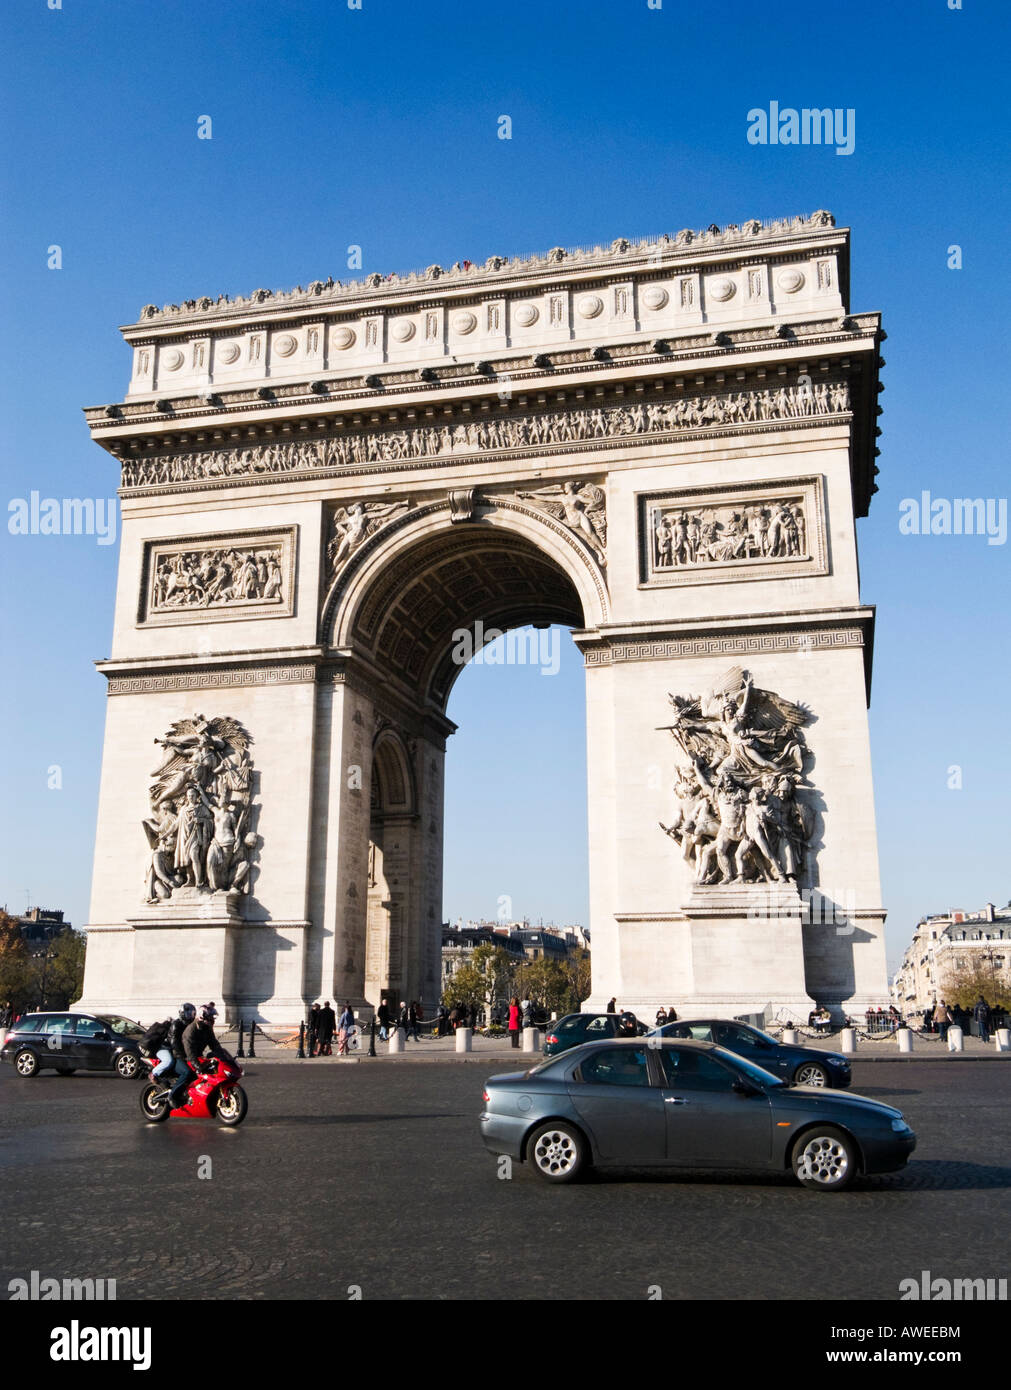 Parigi, Francia: l'Arc de Triomphe con Cars driving intorno ad esso Foto Stock